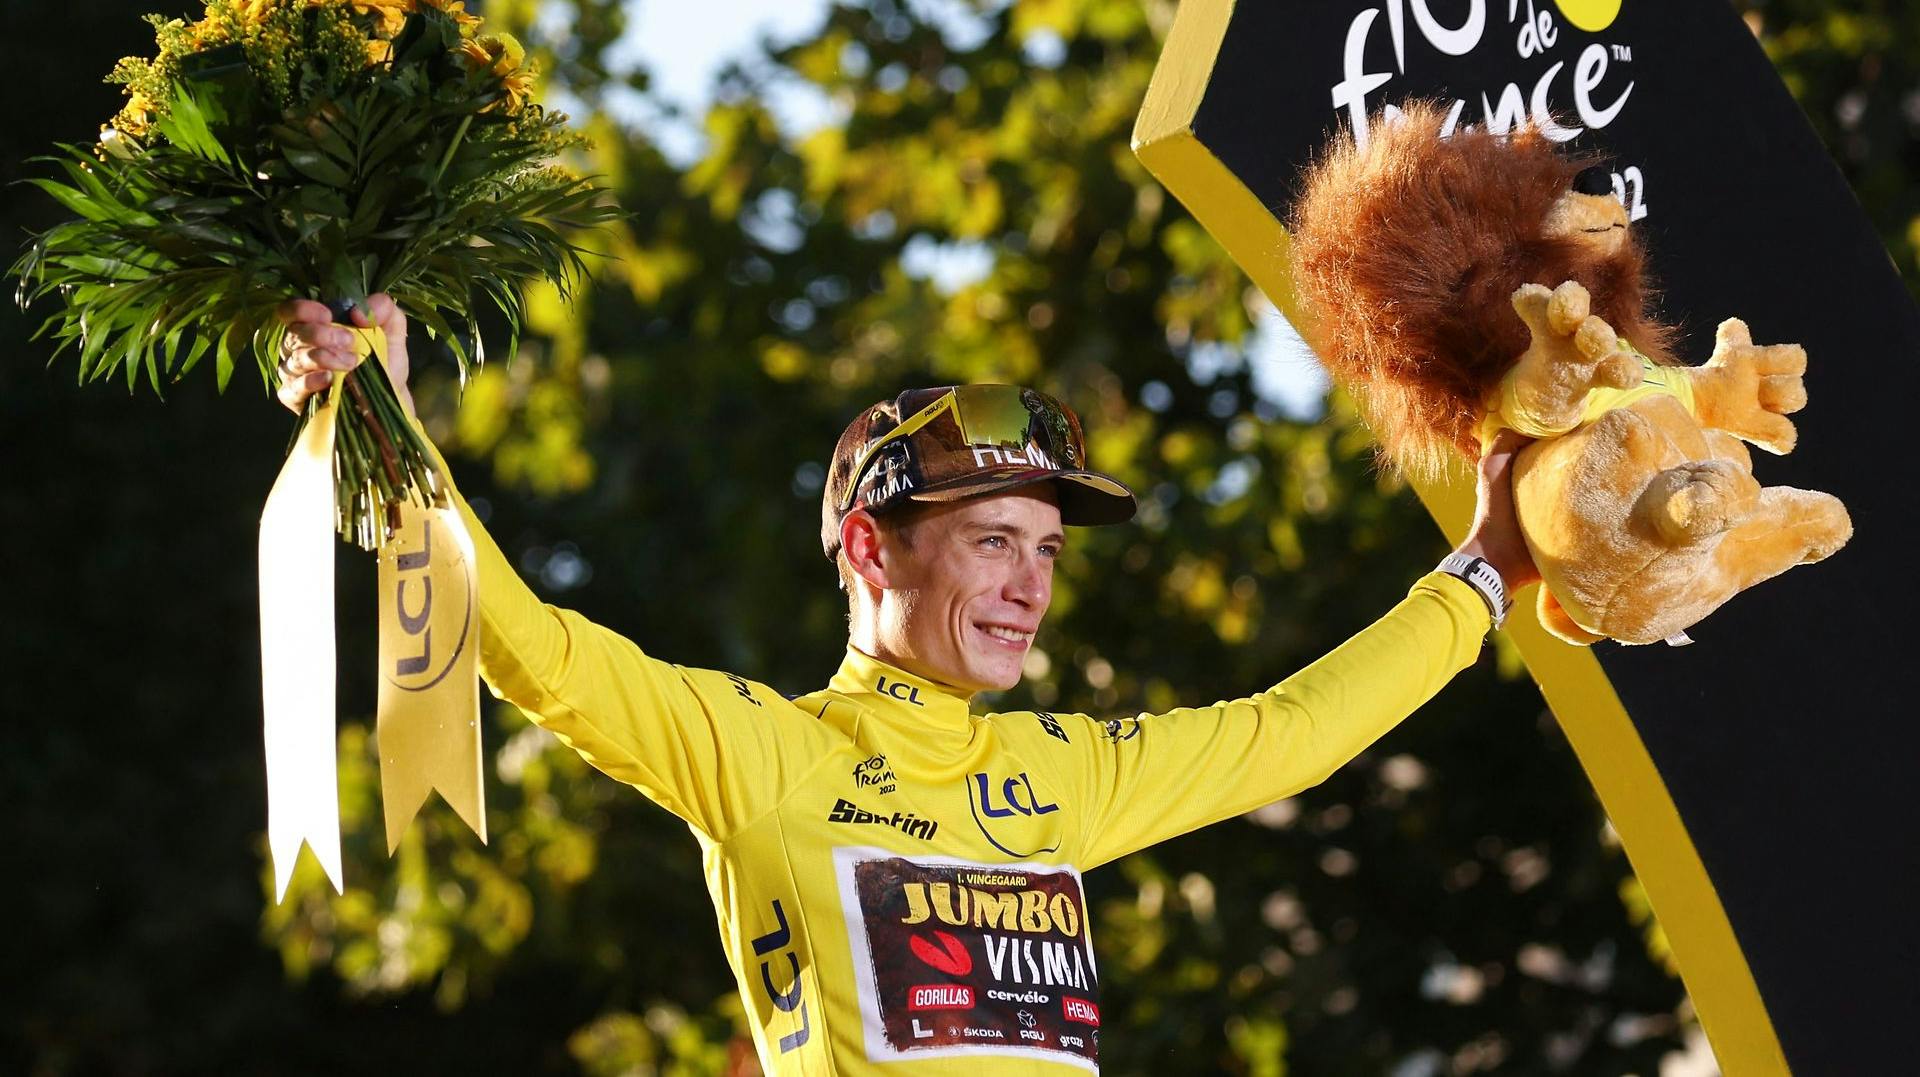 Jonas Vingegaard kan se frem til mange dages fejring, efter den flotte Tour de France-sejr. Torsdag kommer det til at foregå i Glyngøre, hvor han bor med sin kæreste og deres datter